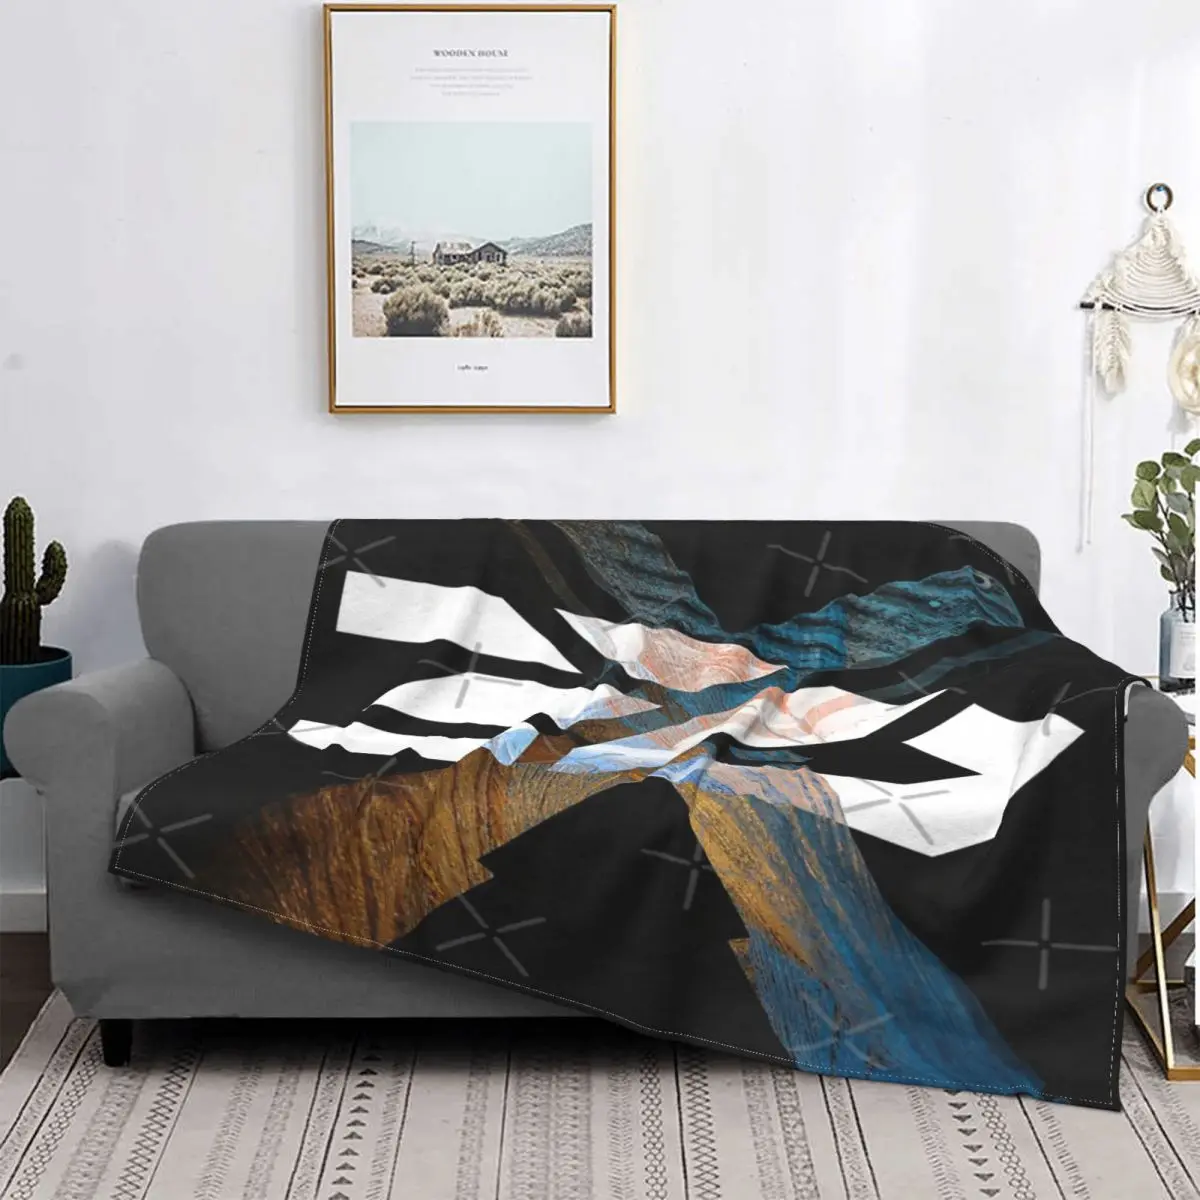 

Frfriends-álbum de ilustraciones, manta, colcha, cama, cubierta a cuadros, manta doble de Anime, toalla de playa de lujo